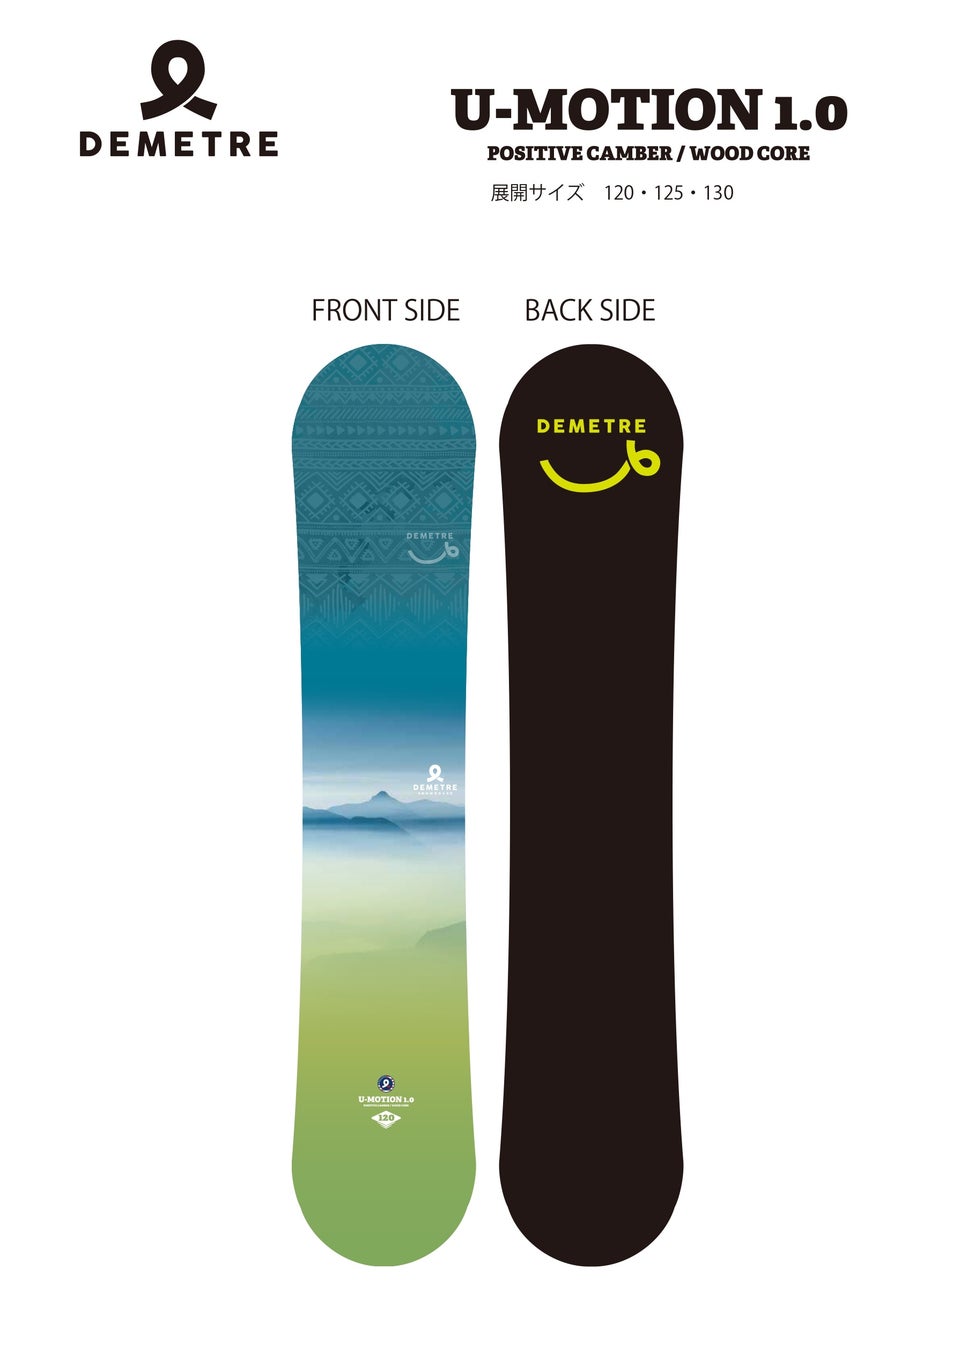 往年一世風靡したアメリカのスキーブランドDEMETRE（デメトレ）がスノーボードを国内販売開始のサブ画像6